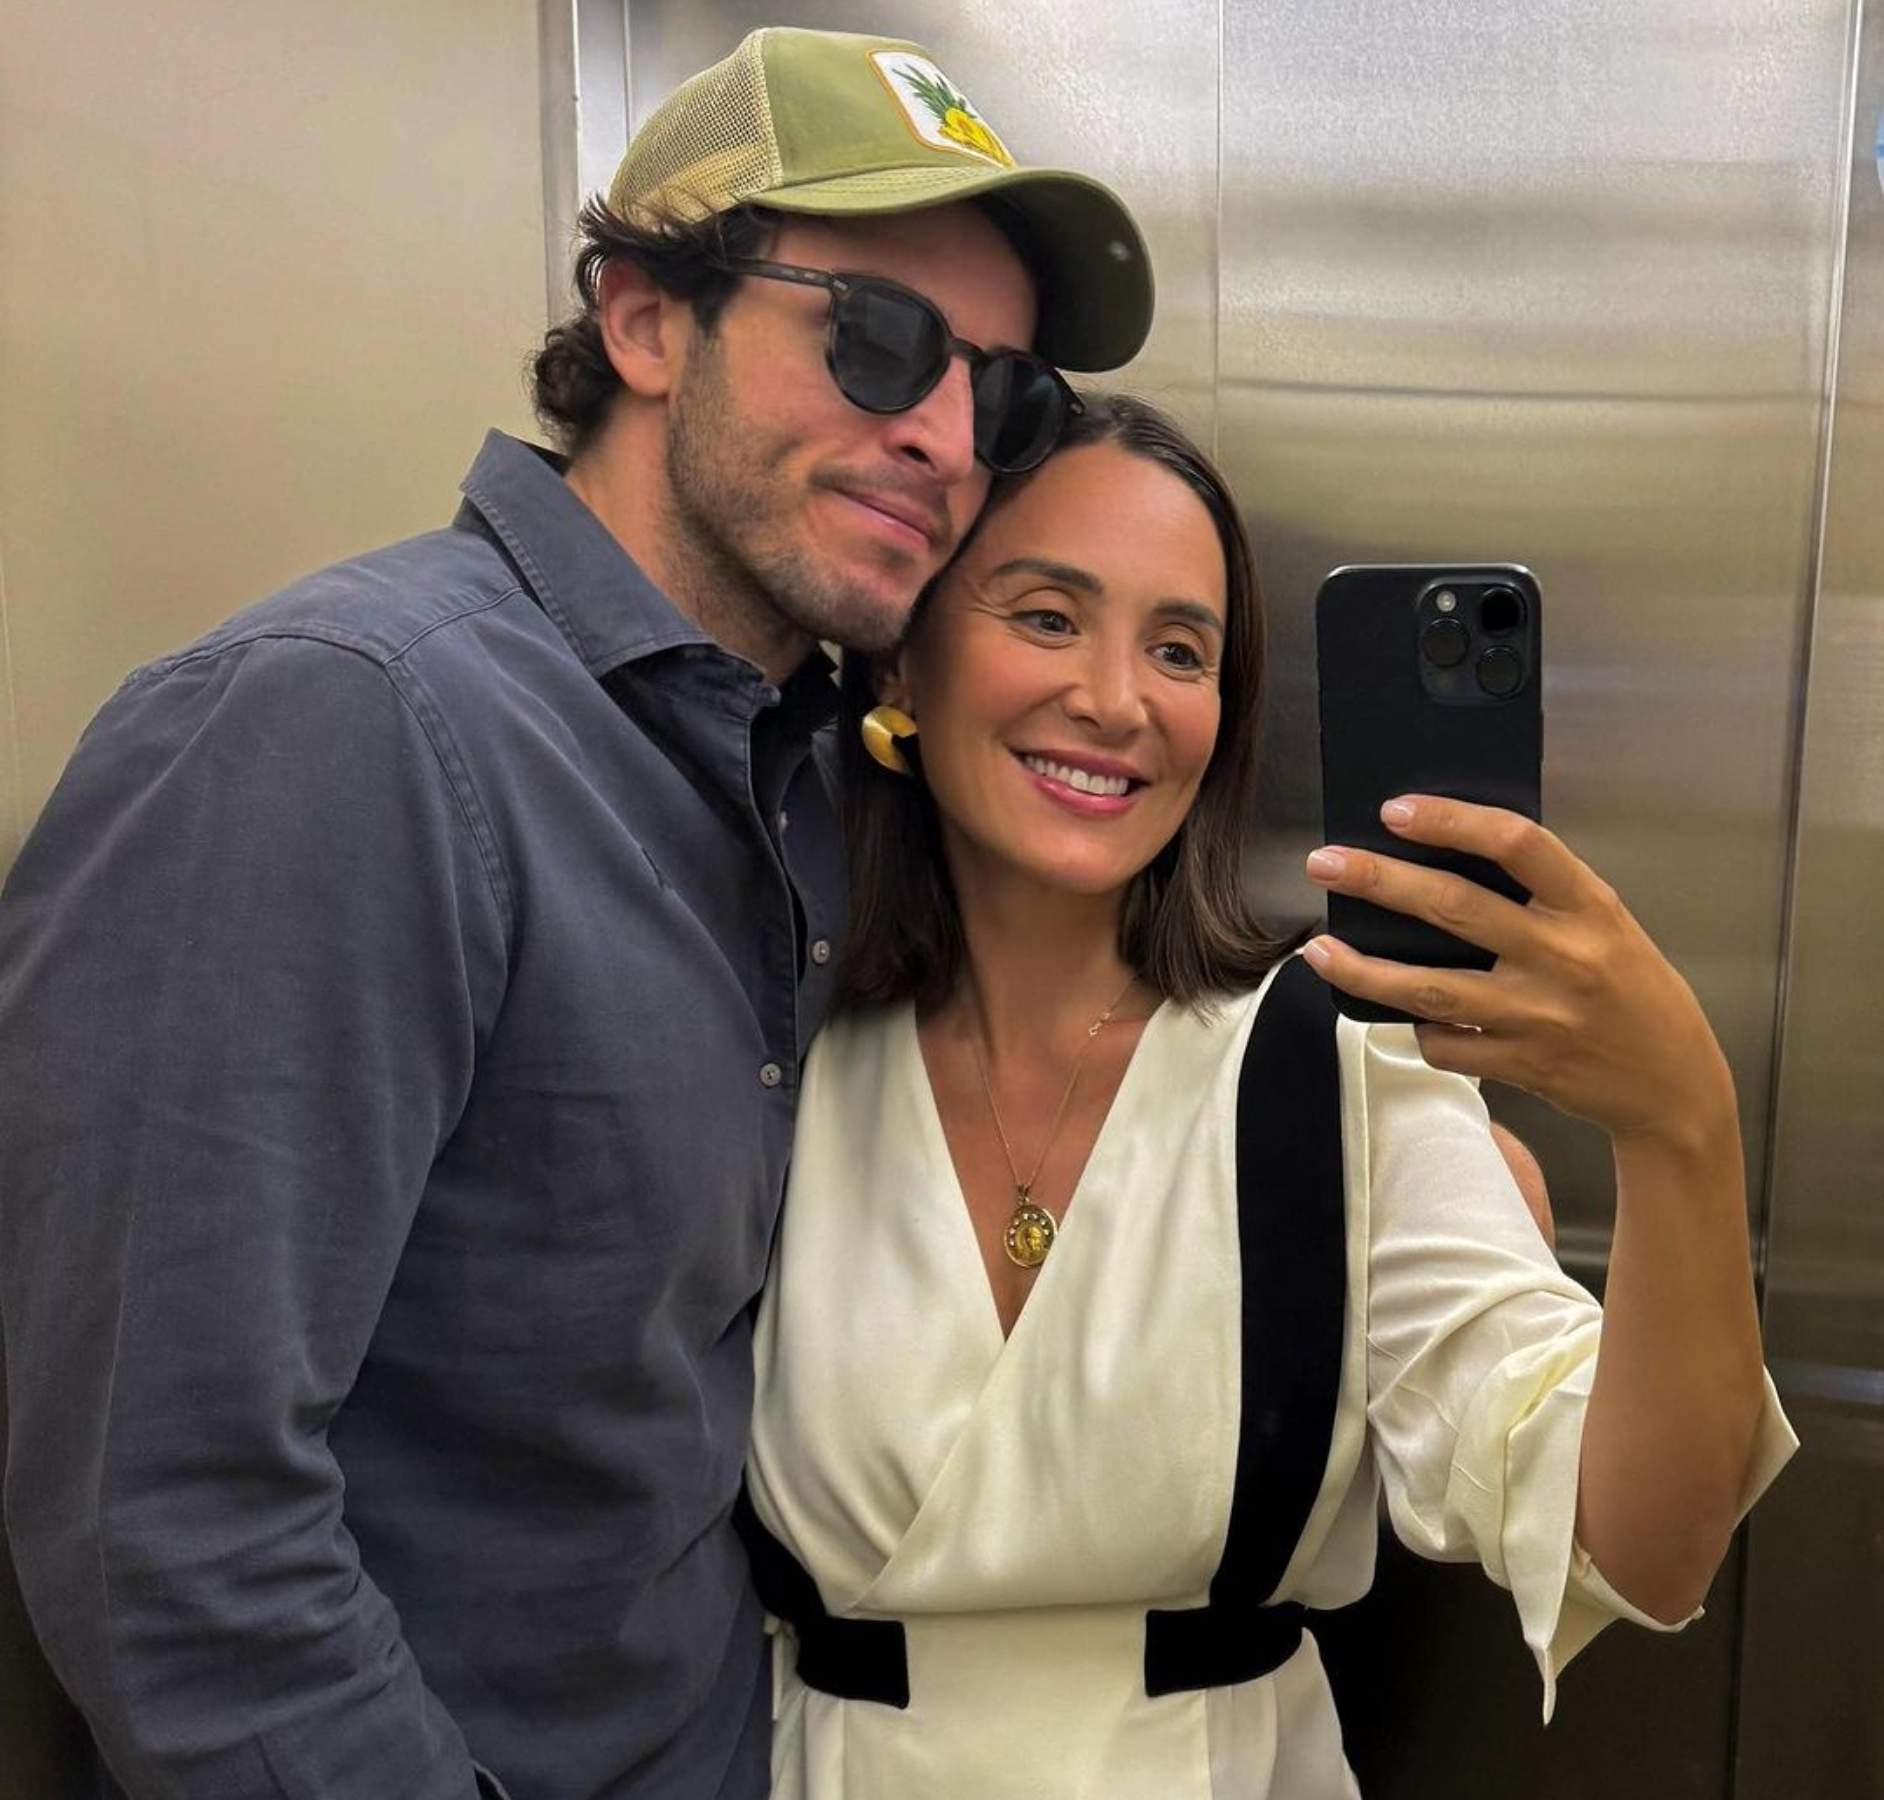 Tamara Falcó e Íñigo Onieva disparan los rumores de embarazo: 'selfie' con una pista clave